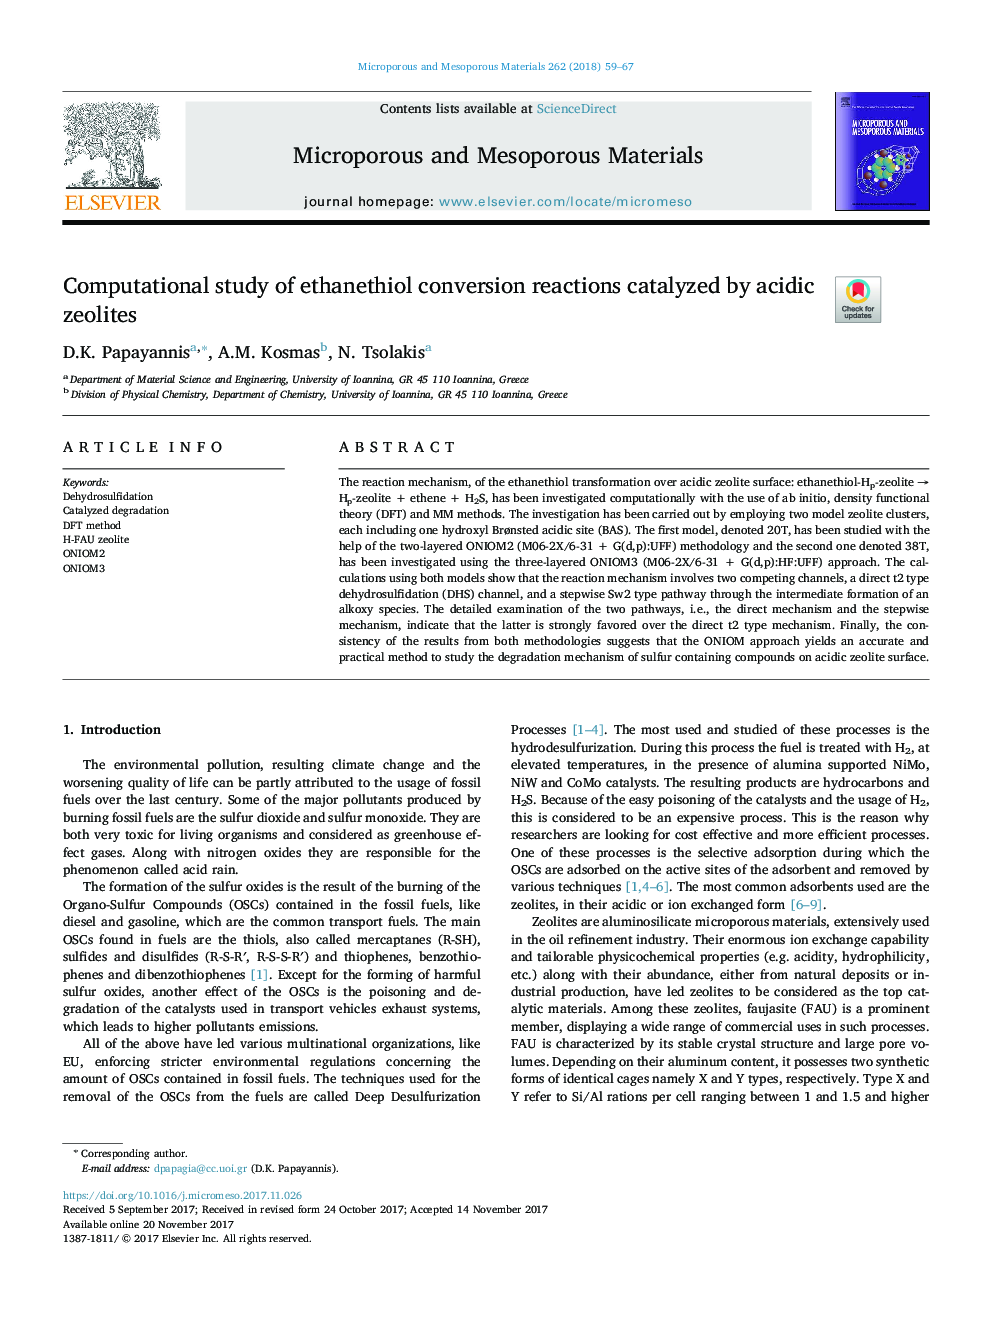 بررسی محاسباتی واکنشهای تبدیل اتینتال که توسط زئولیت اسیدی کاتالیز شده است 